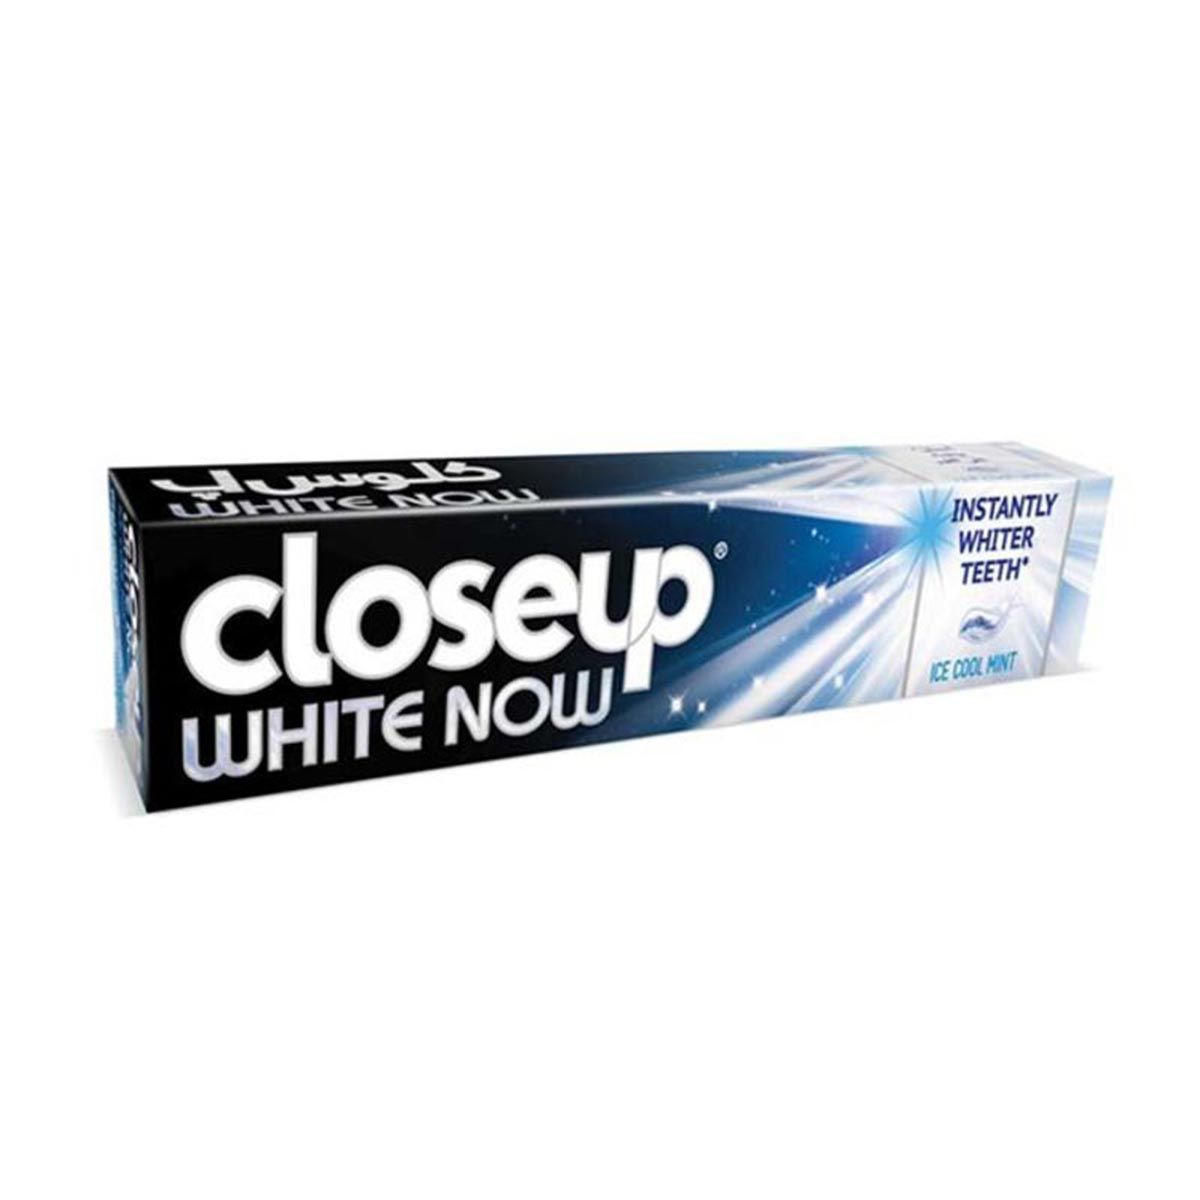 Toothpaste White Now